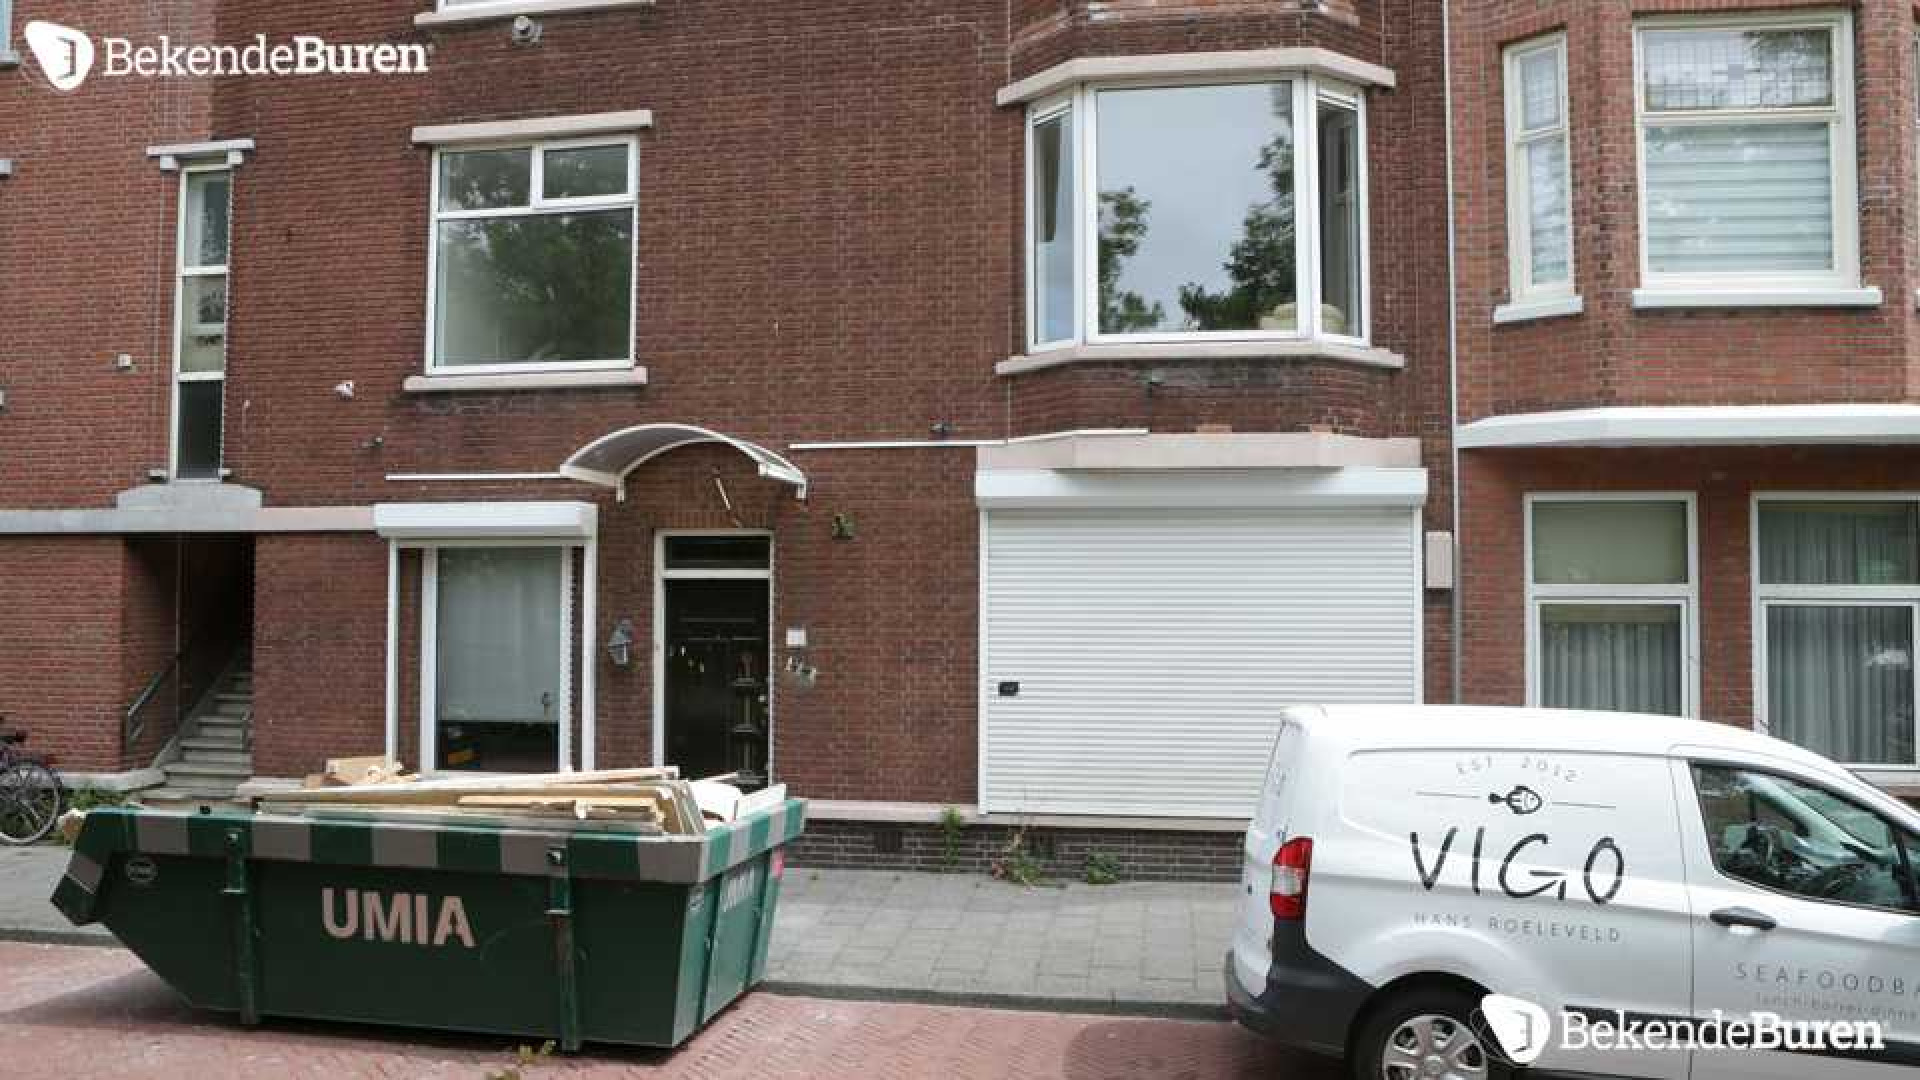 Bibi Breijman druk aan het verbouwen aan haar Haagse woning! Zie foto's 5